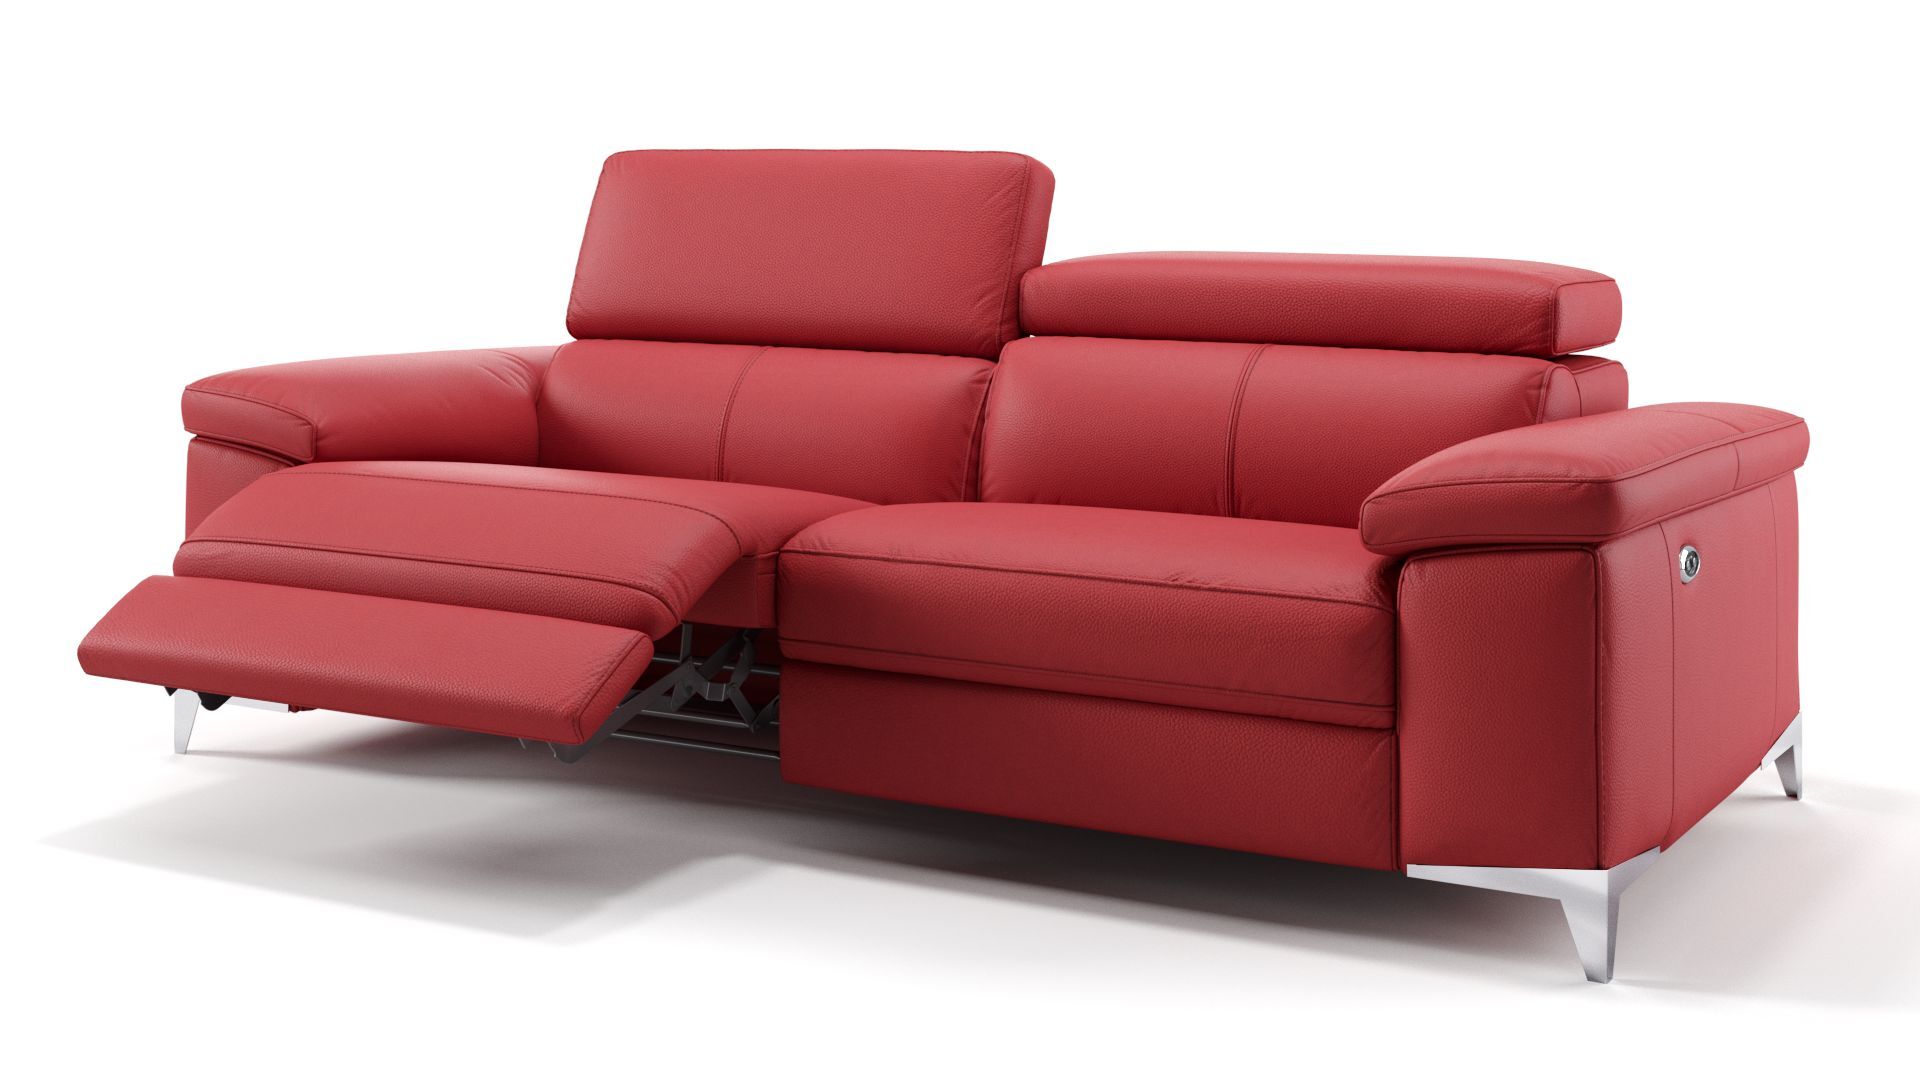 sofanella Dreisitzer Sofa VENOSA mit Motor Sofa Couch 208x79x101cm rot